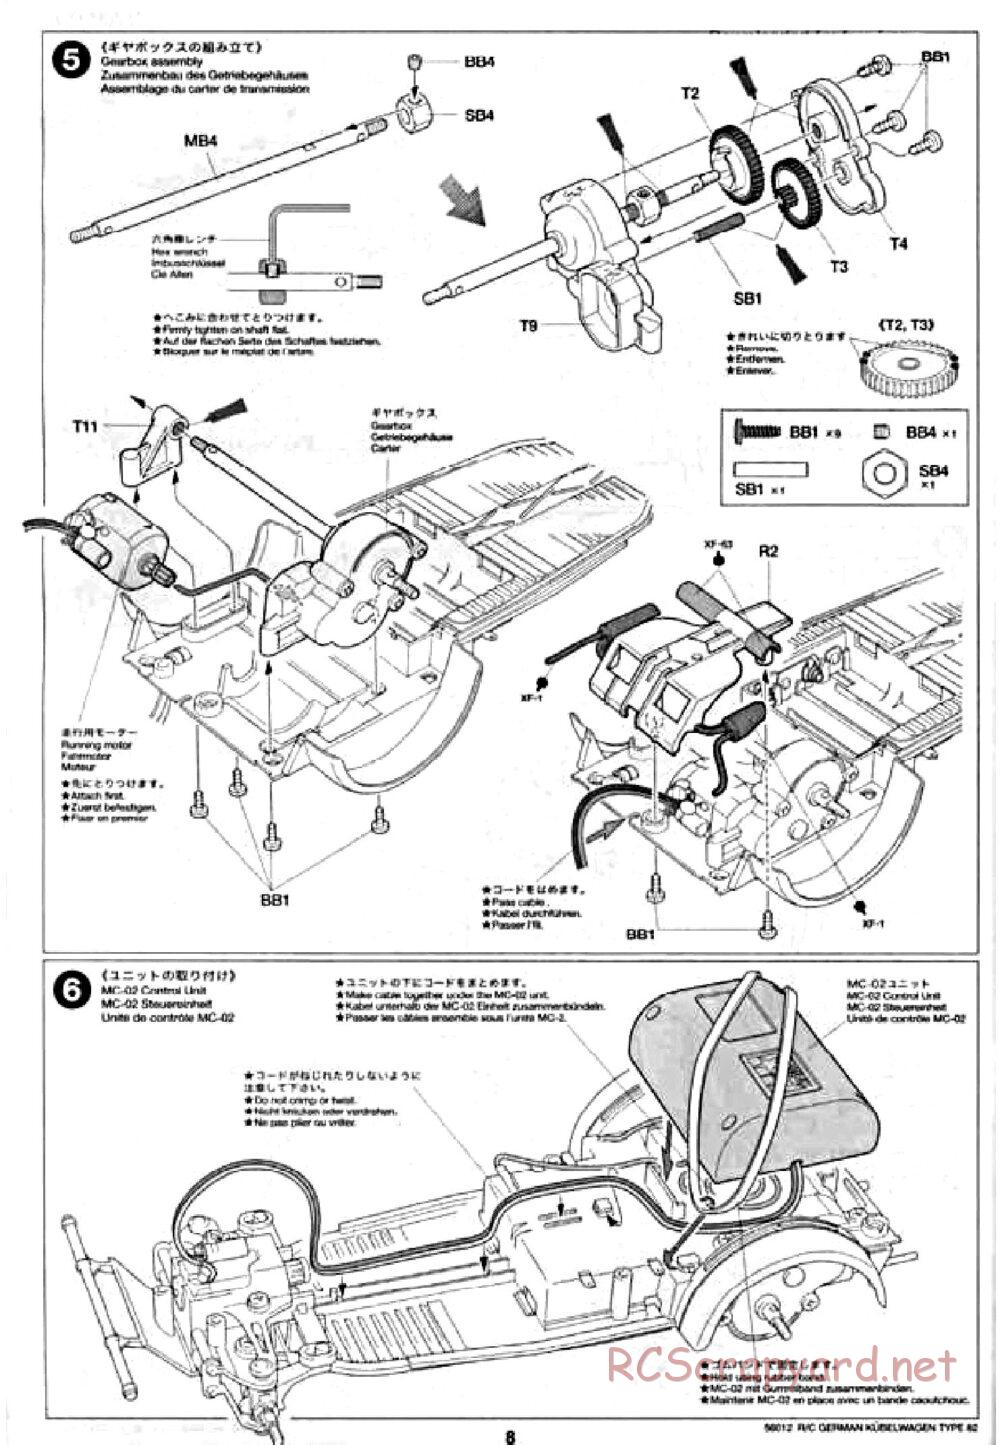 Tamiya - Kubelwagen Type 82 Chassis - Manual - Page 8